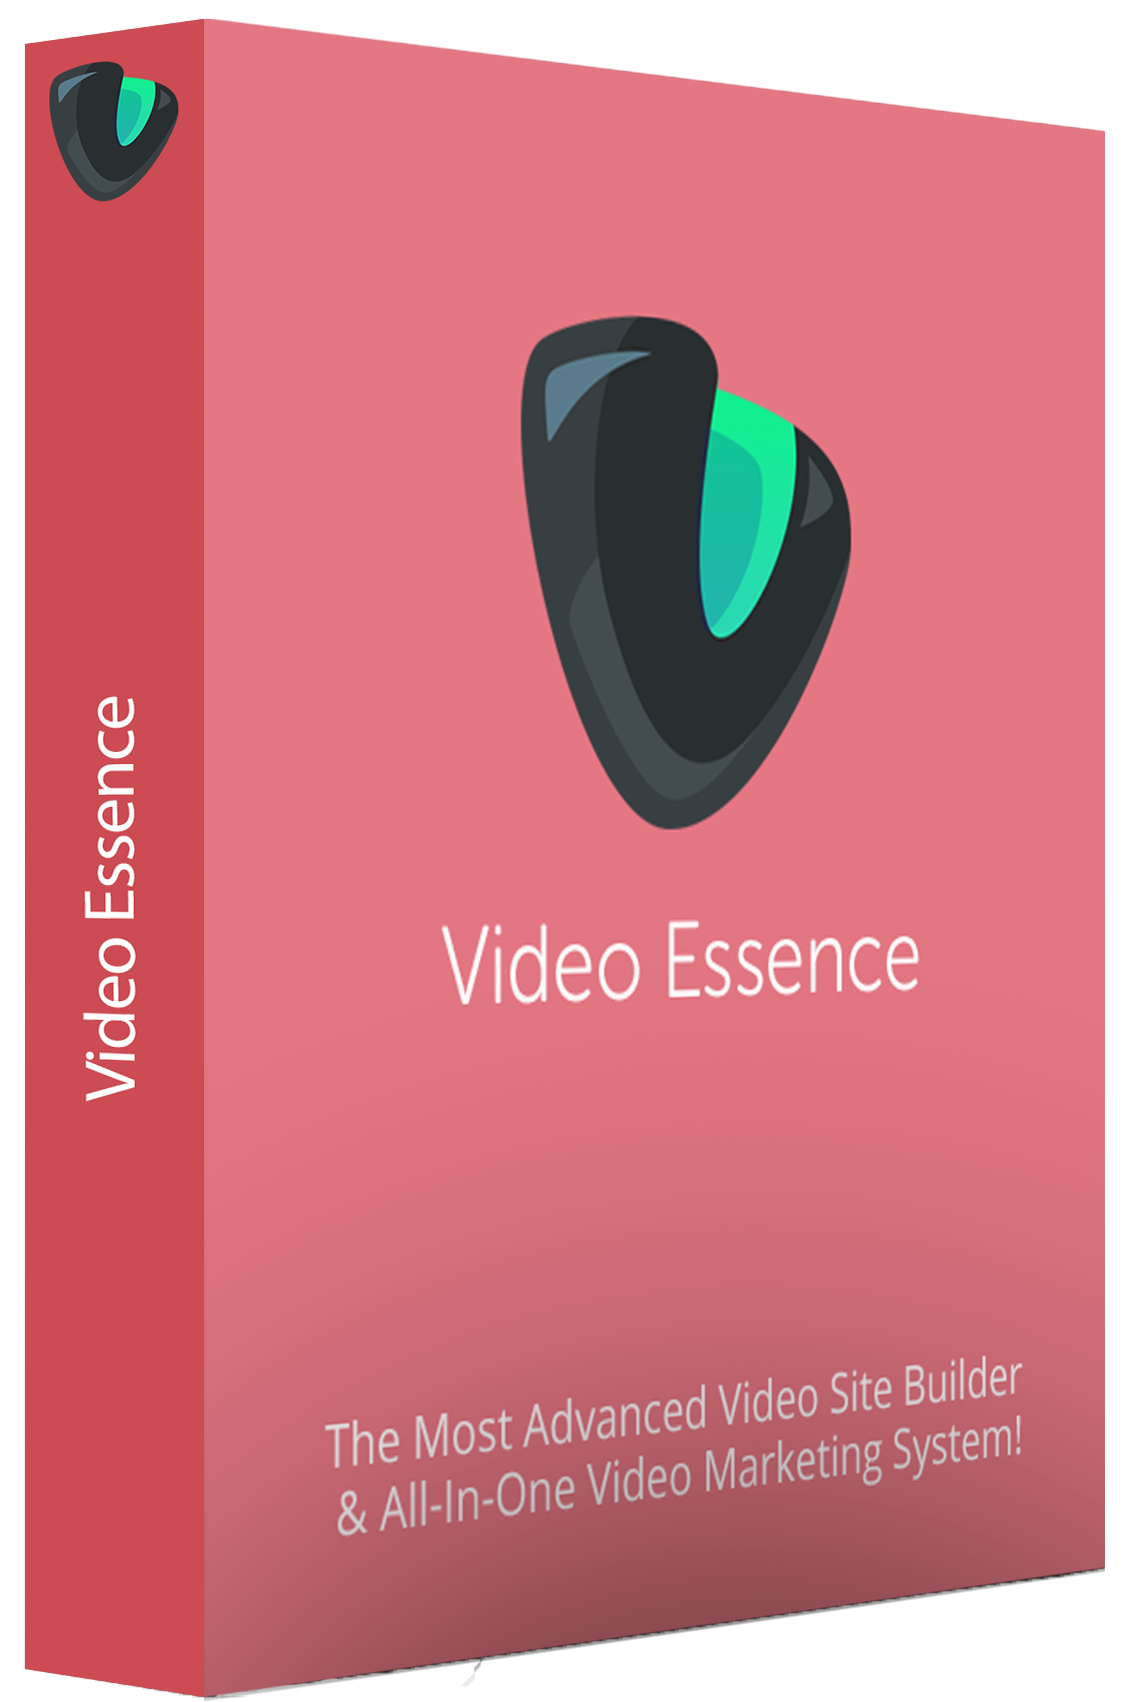 Video Essence